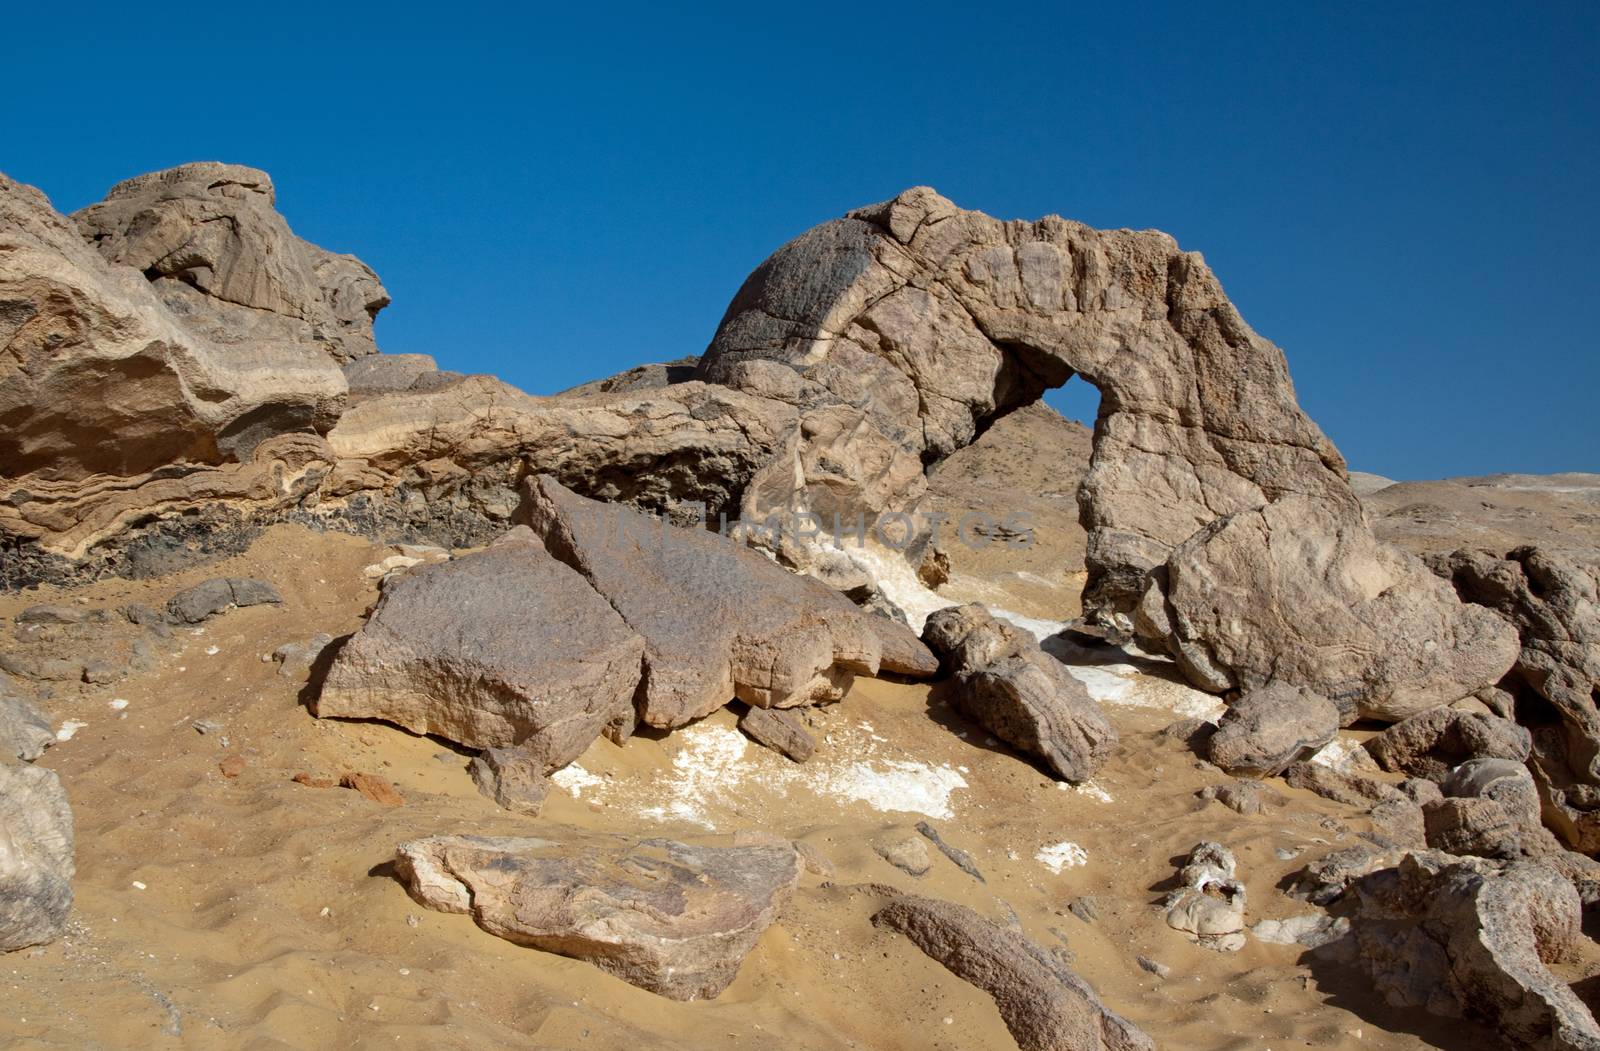 Crystal mountain, the crystal hills near Farafra oasis ,Egypt